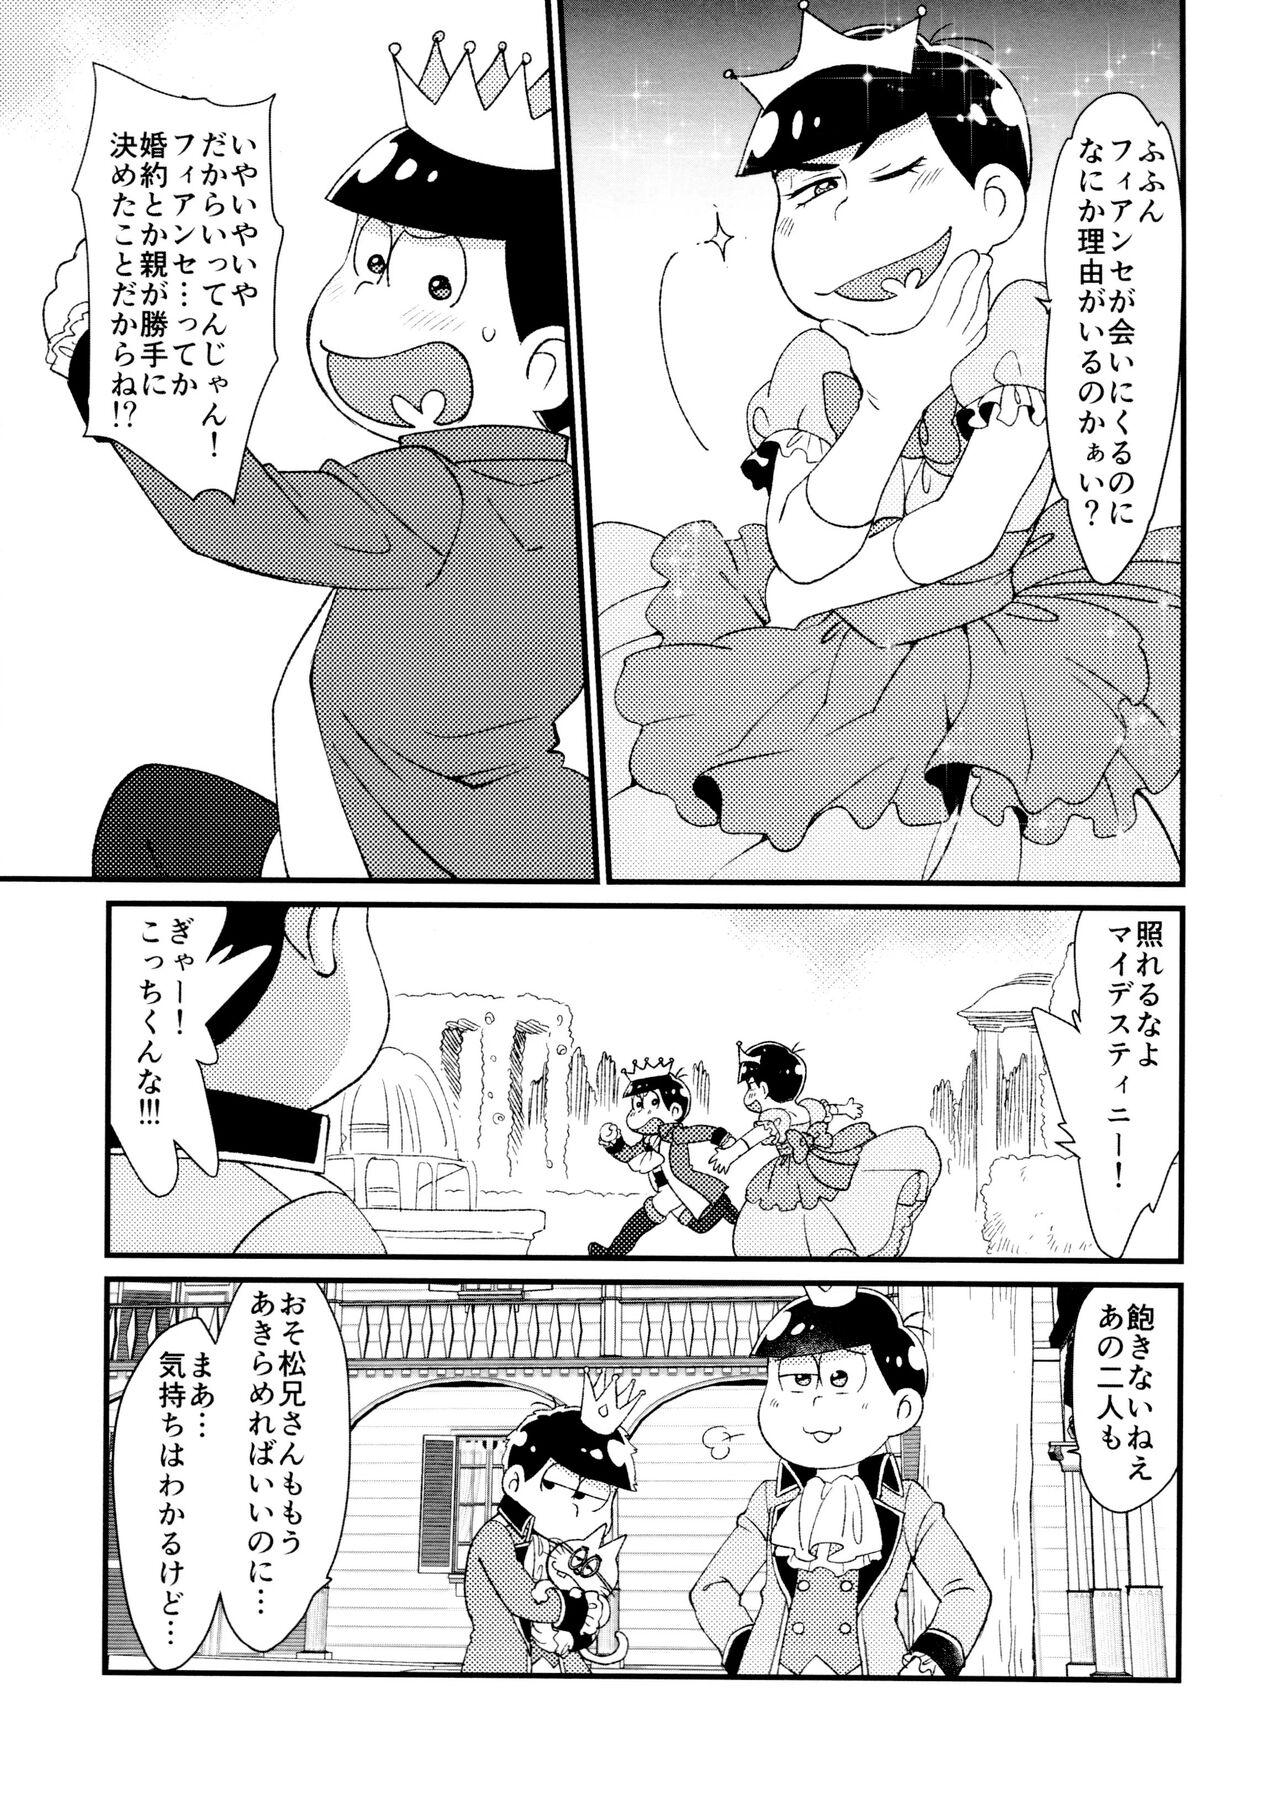 Amateur Sex Anata wa watashinounmei no hito - Osomatsu san Sesso - Page 6